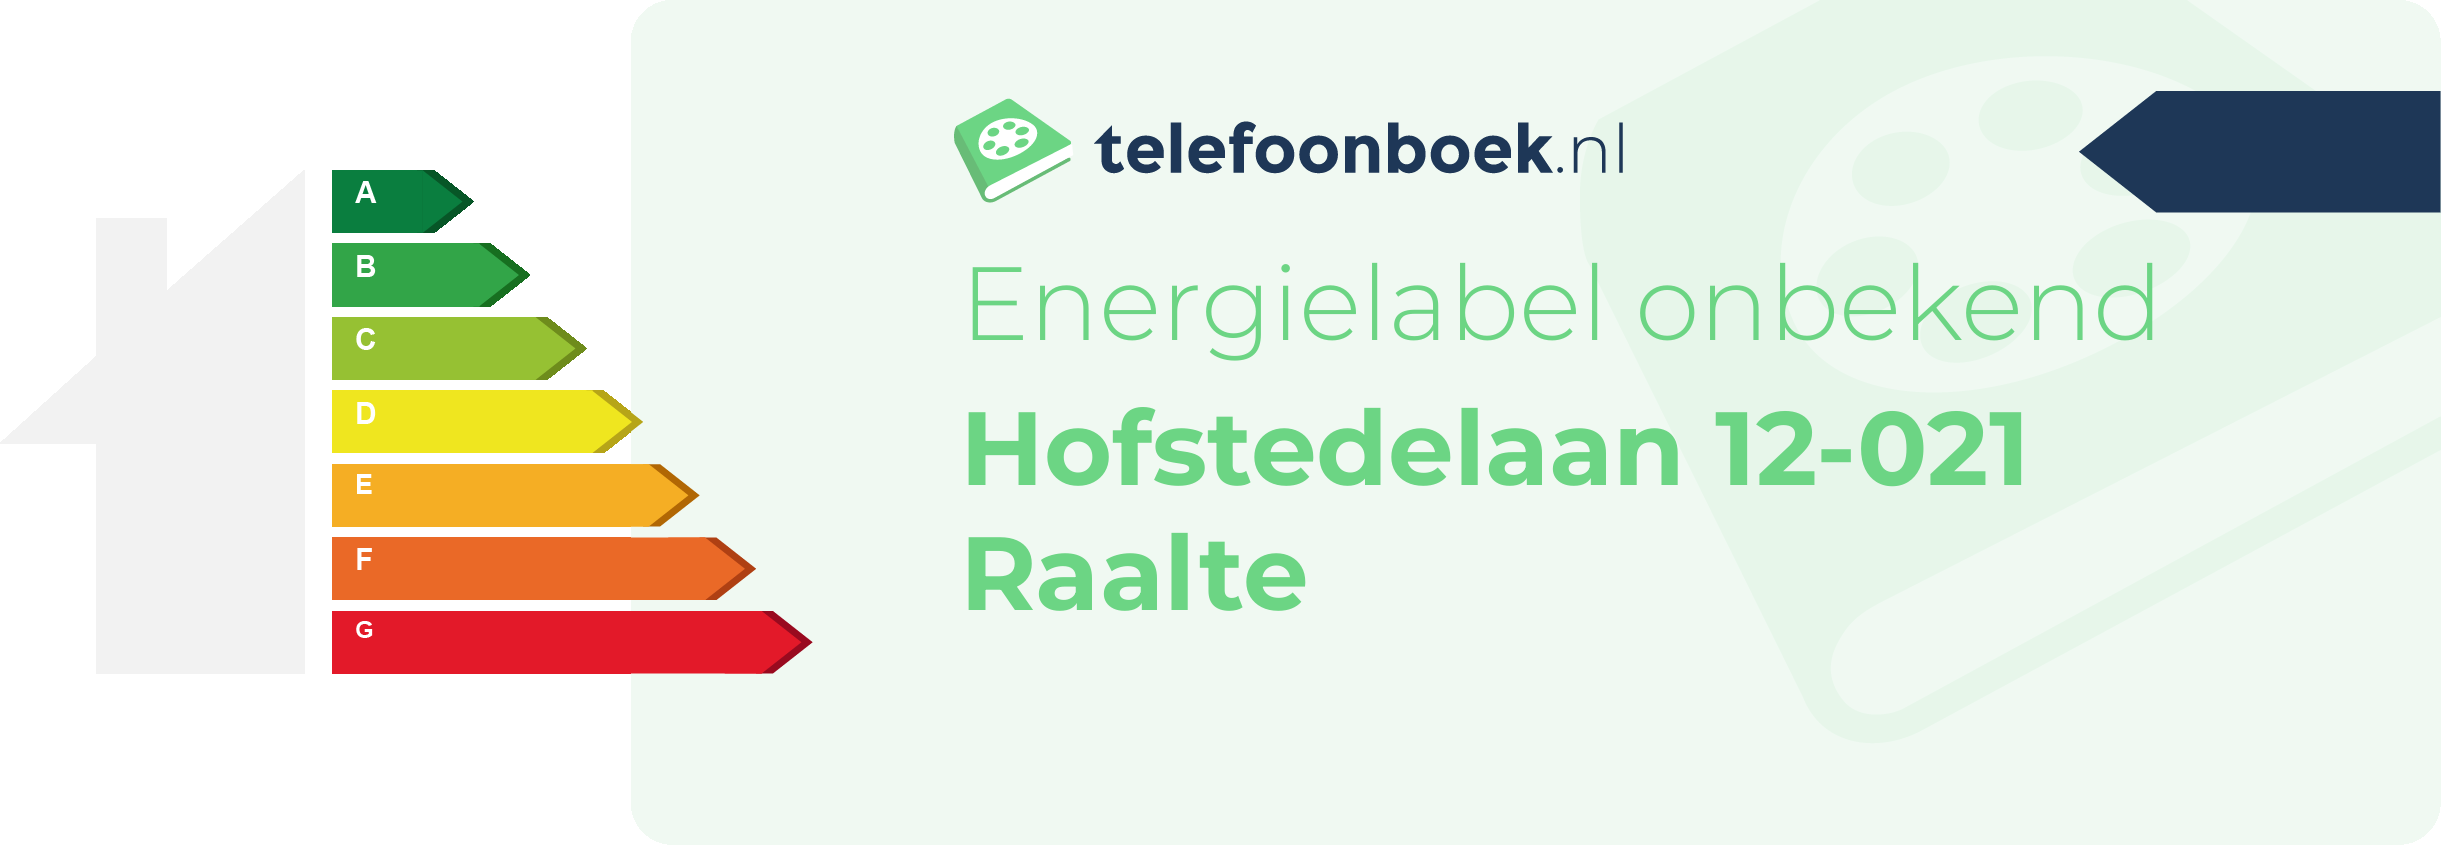 Energielabel Hofstedelaan 12-021 Raalte